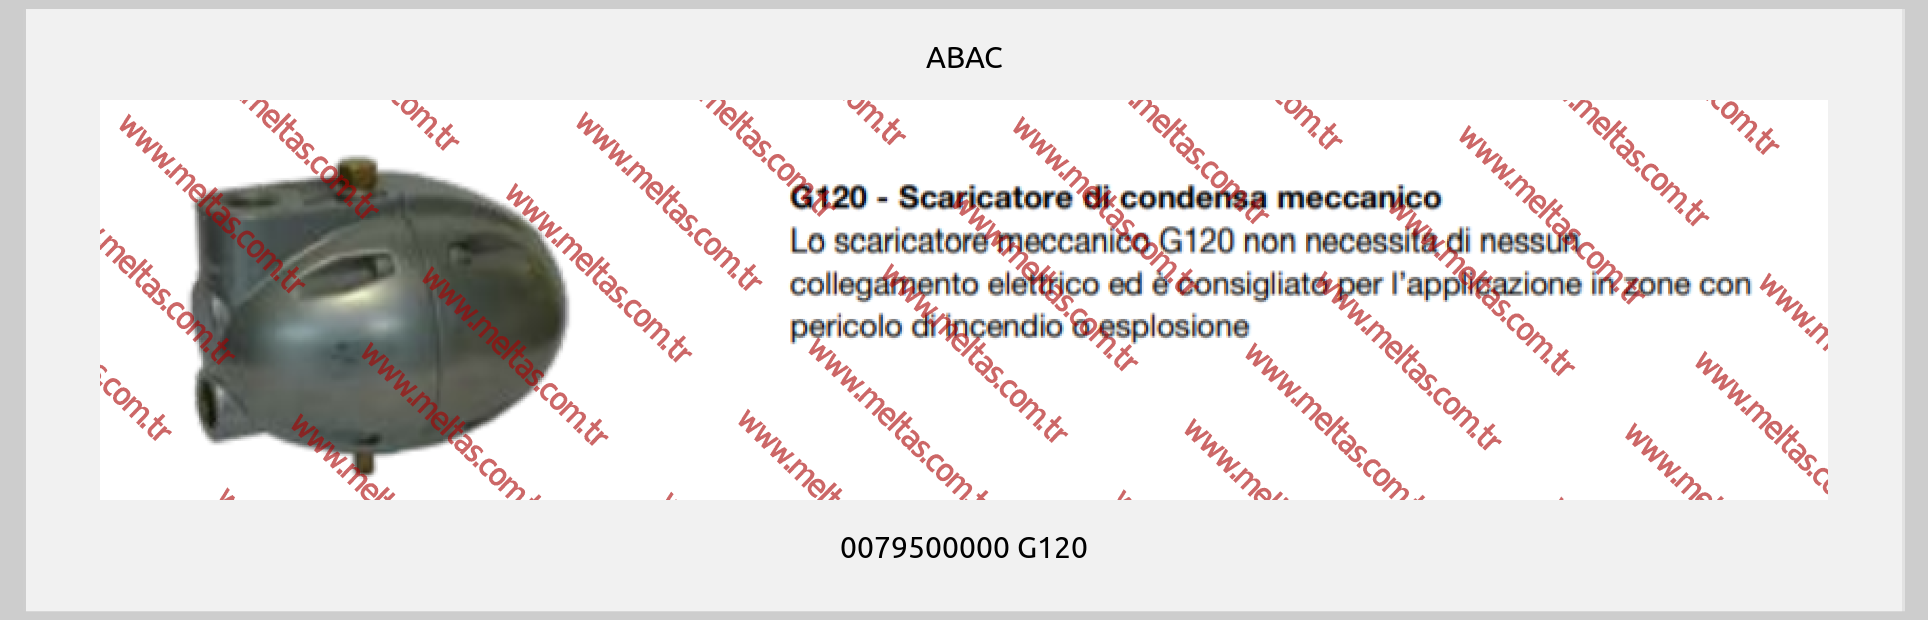 ABAC - 0079500000 G120